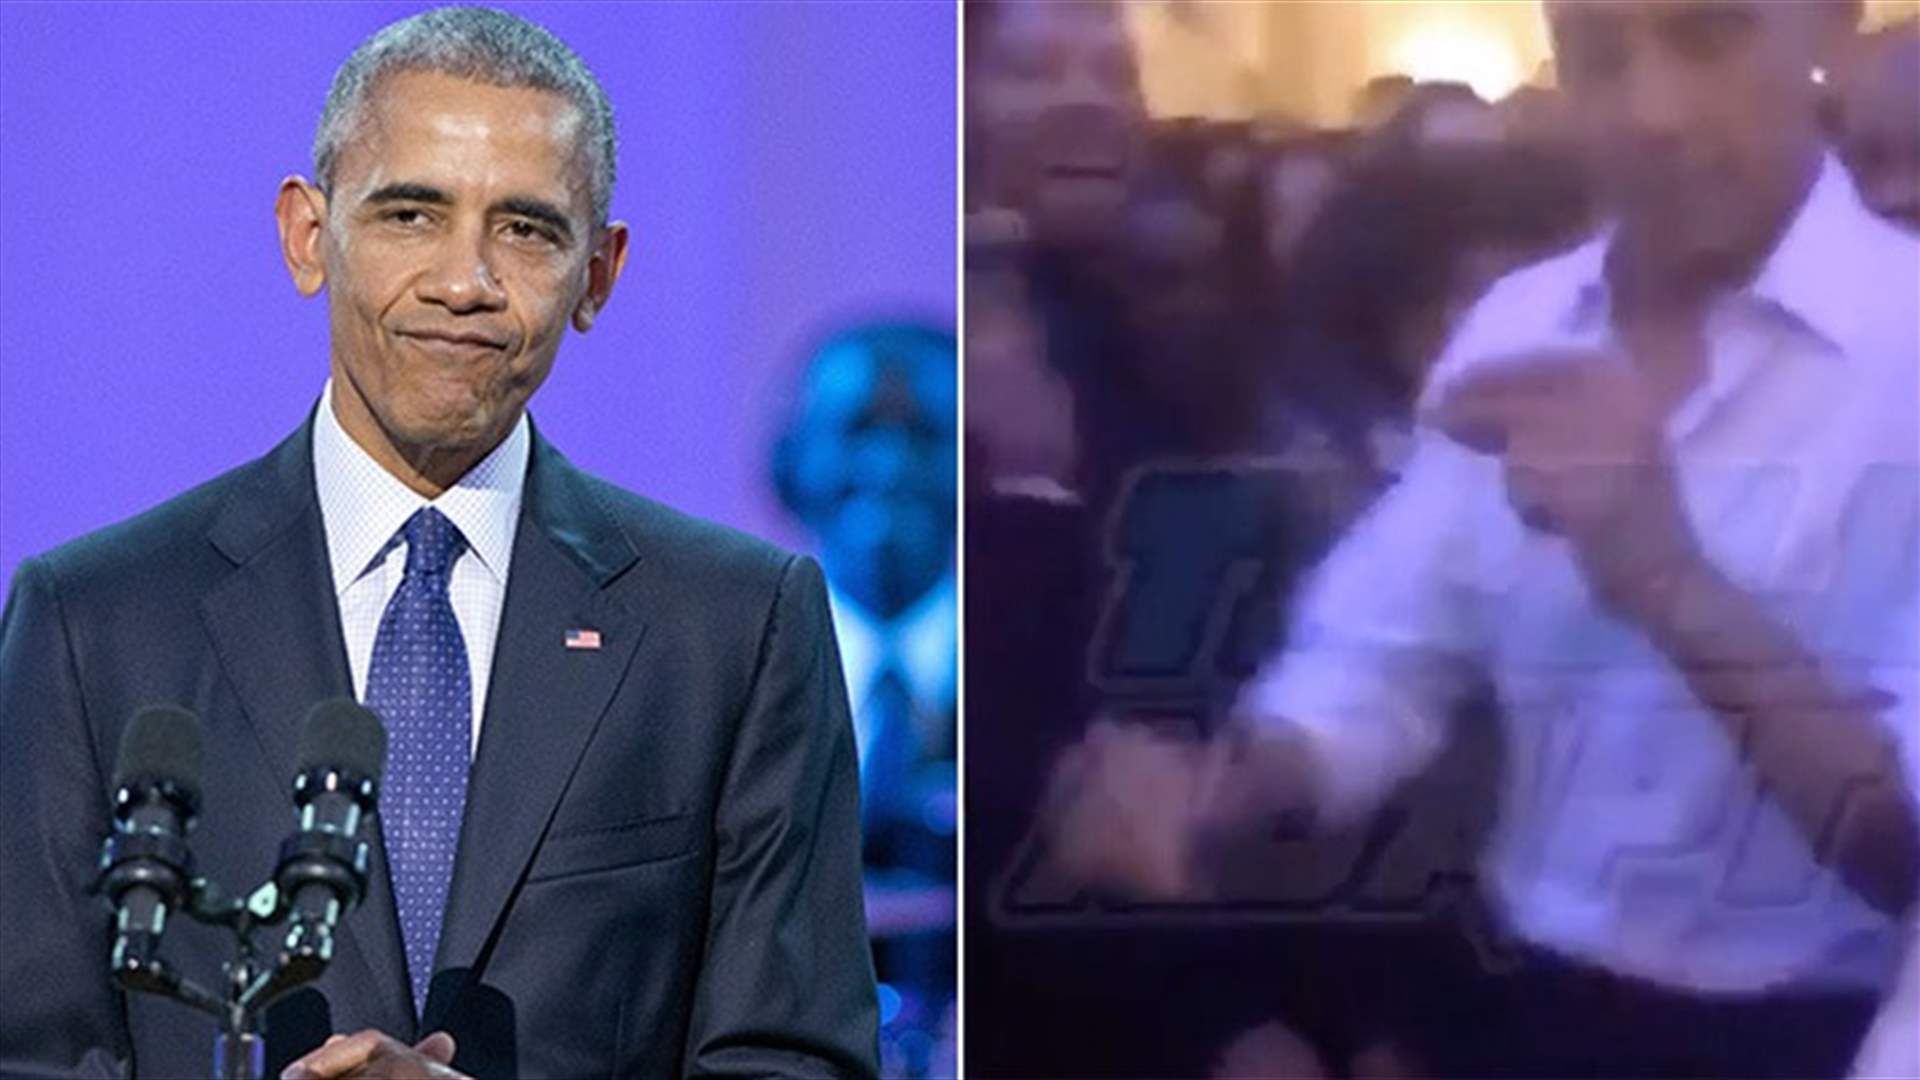 بالفيديو: أوباما يرقص بعفوية بأيامه الأخيرة في البيت الأبيض